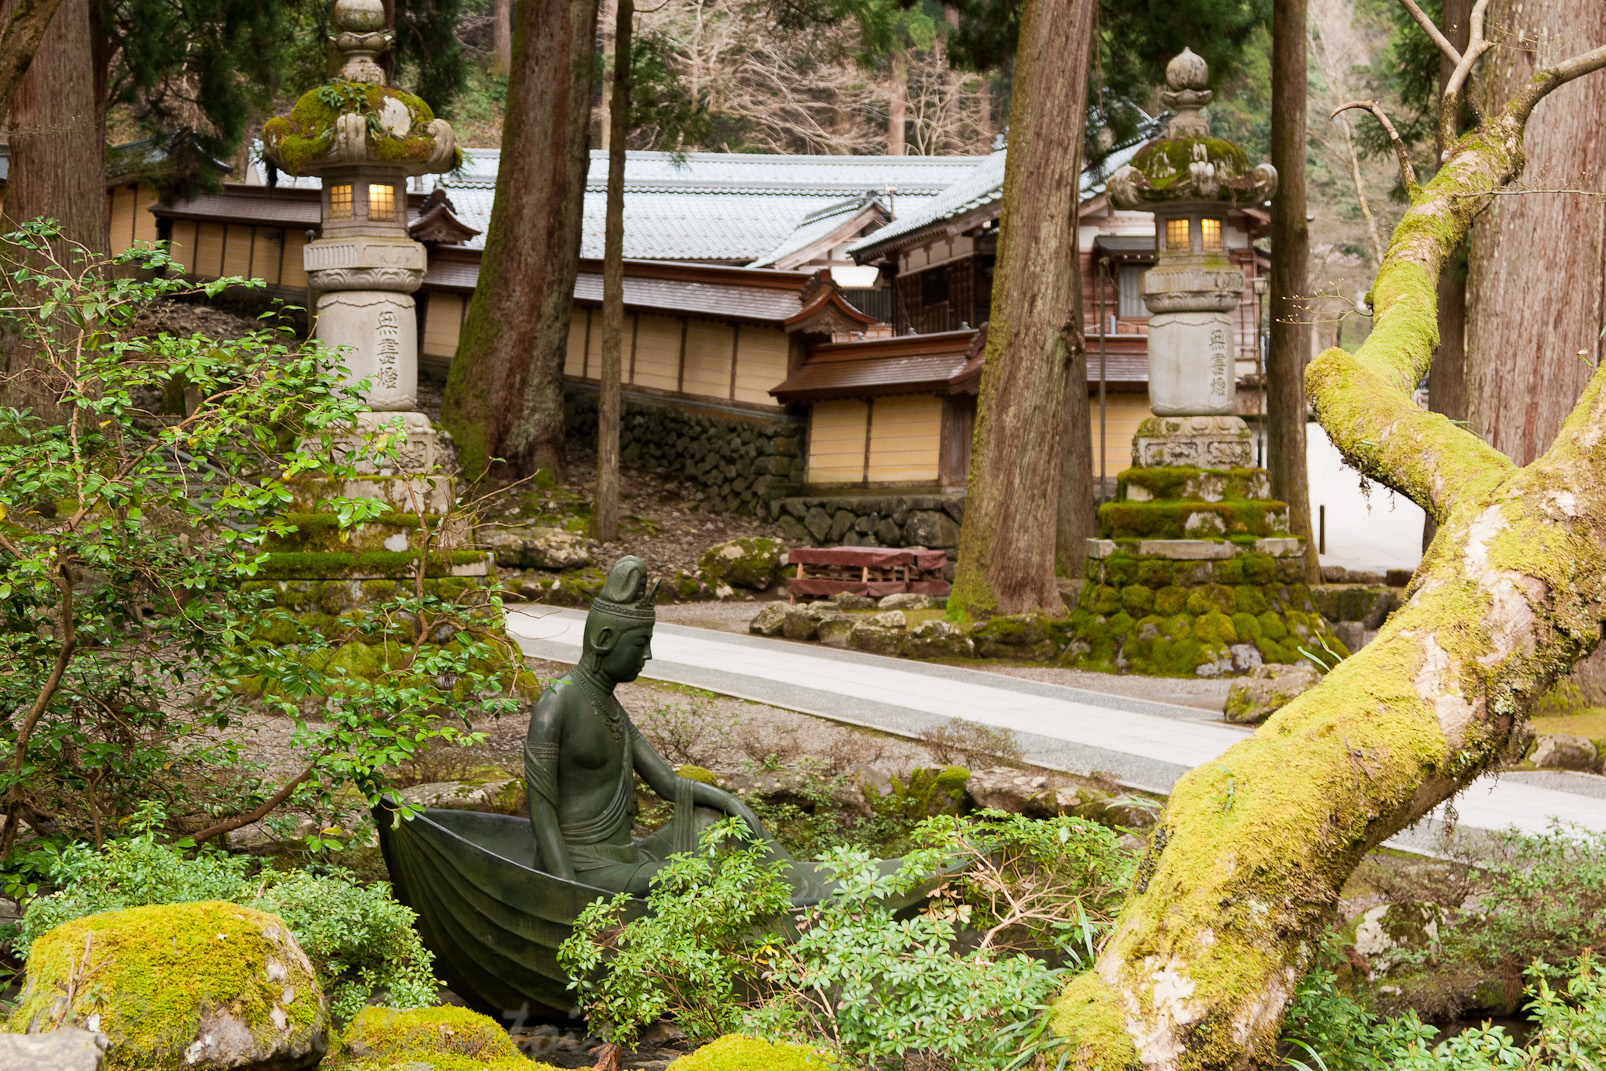 Eiheiji, temple zen de l'école Soto.